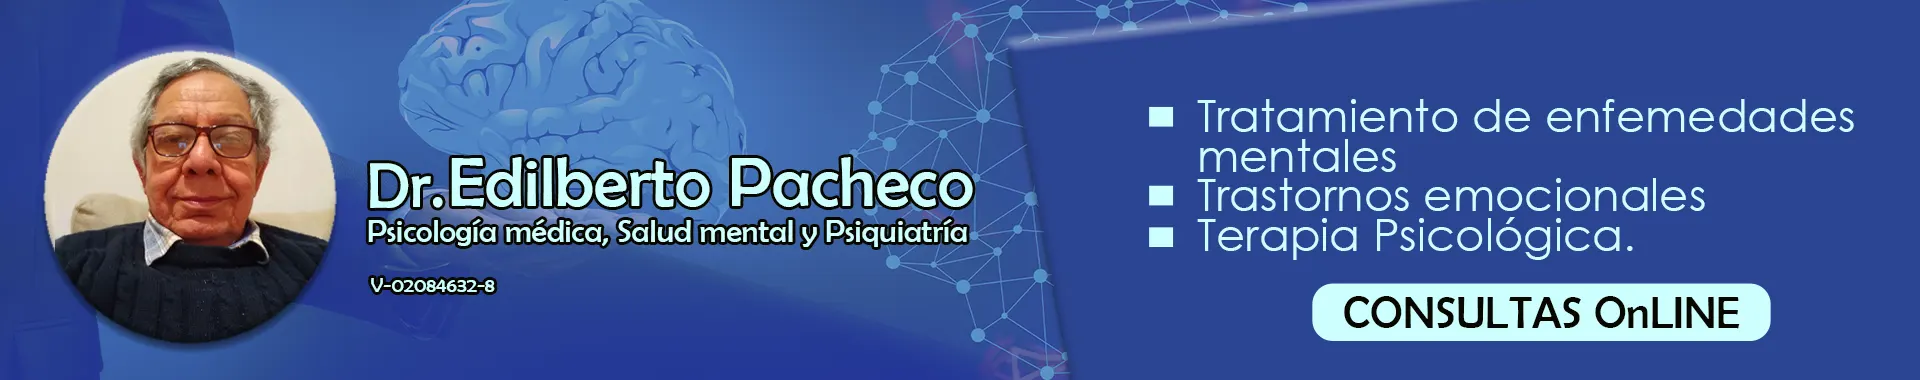 Imagen 1 del perfil de Dr. Edilberto Pacheco Hellal